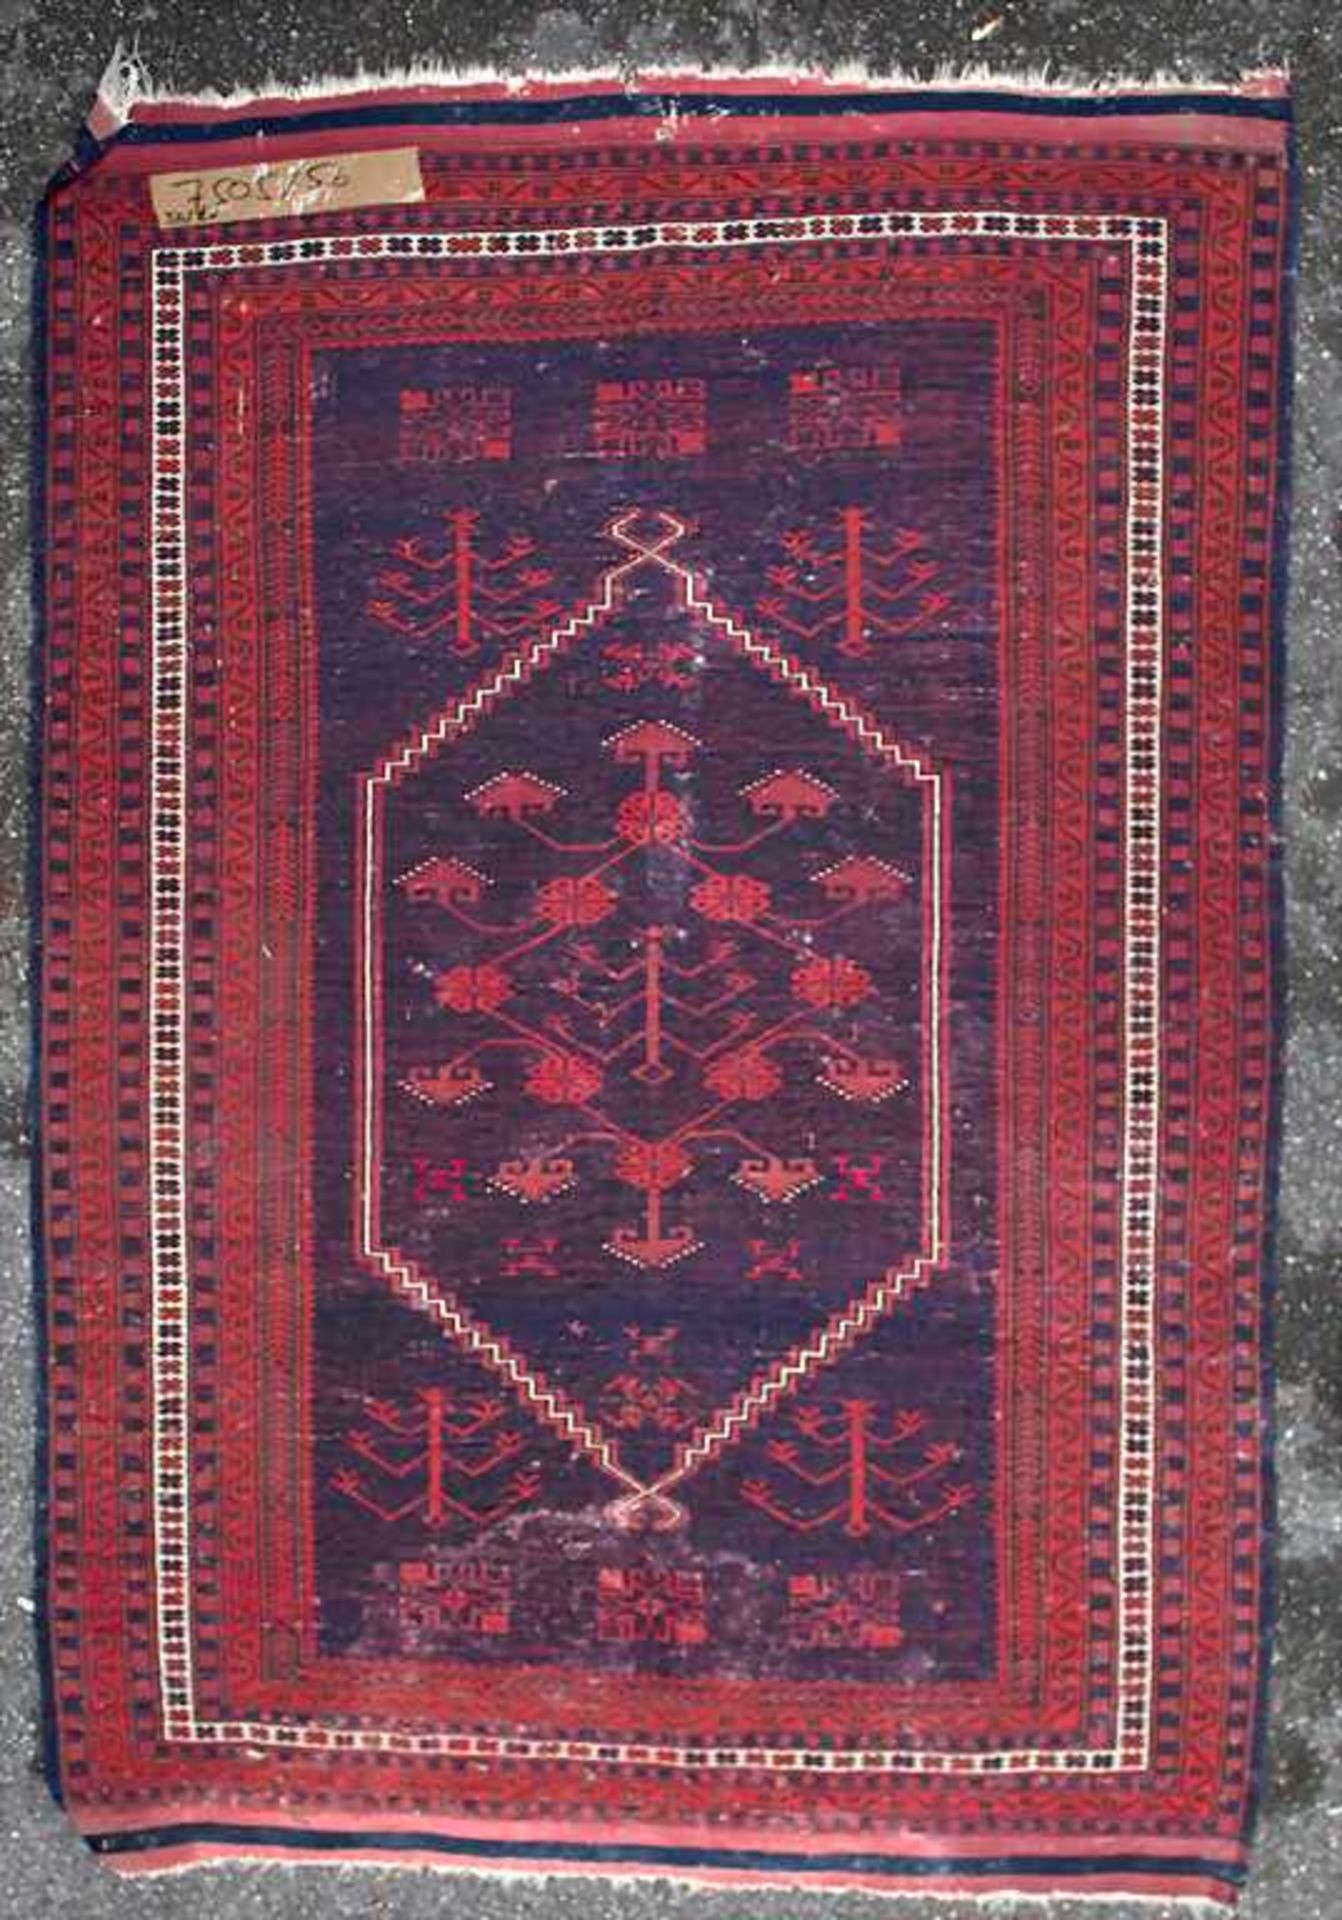 Orientteppich / An oriental carpetMaterial: Wolle auf Baumwolle, Naturfarben, Maße: 160 x 110 cm, - Bild 2 aus 4